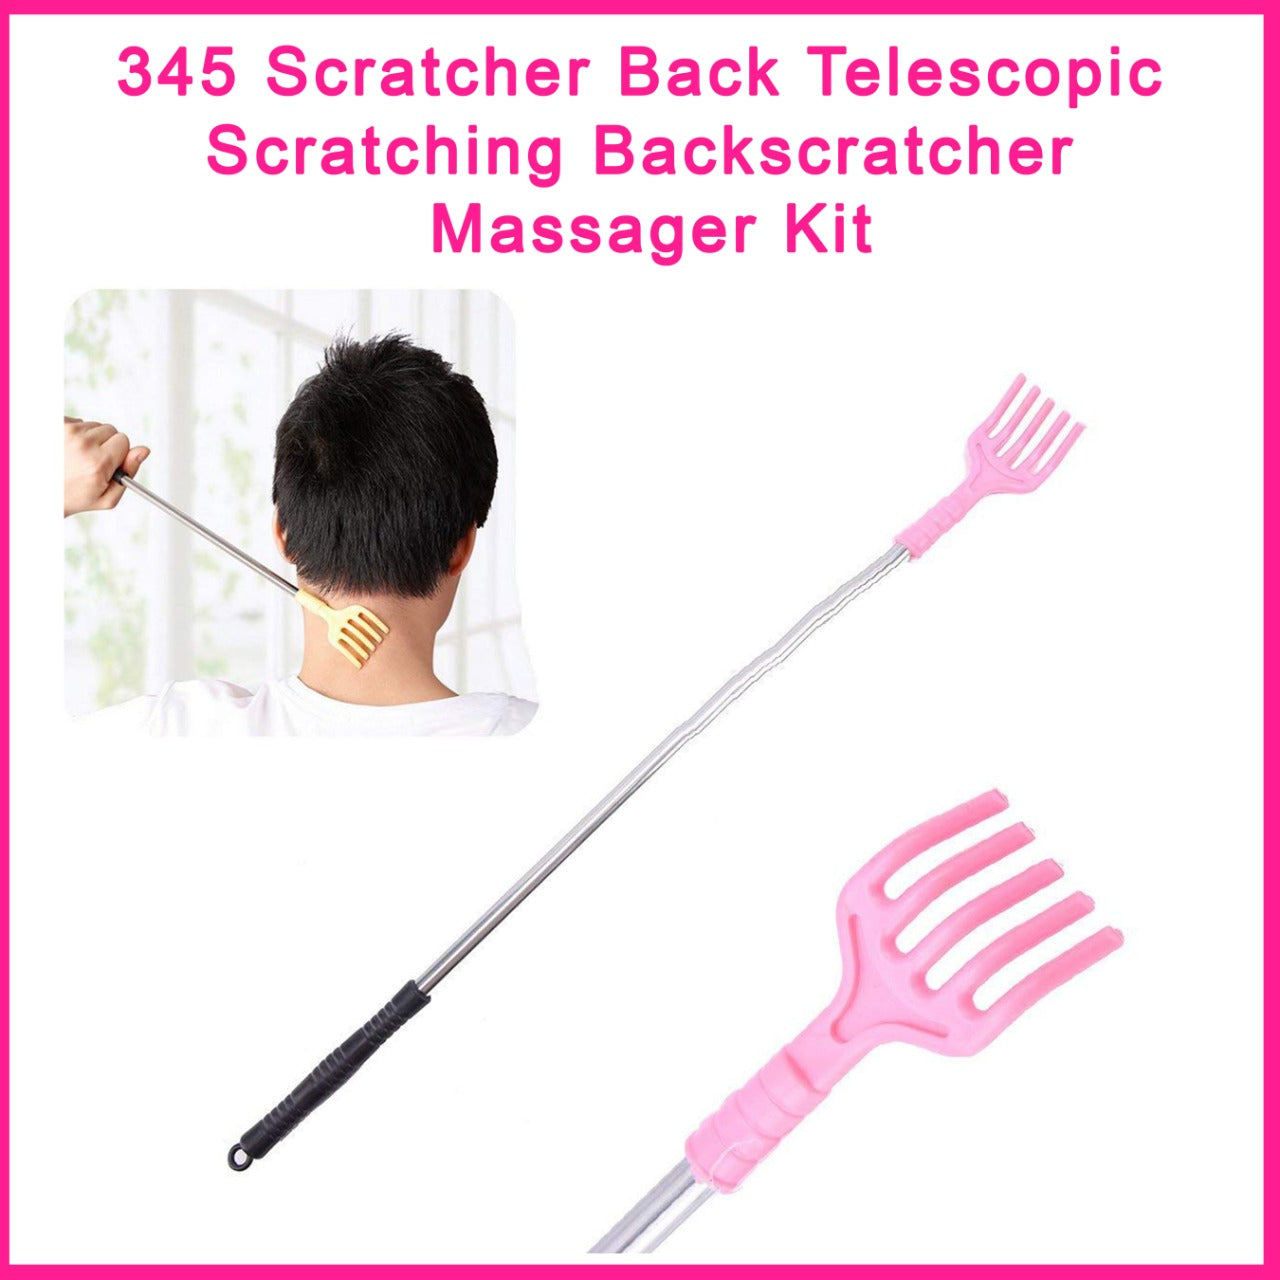 345 Scratcher Back Telescopic Scratching Backscratcher Massager Kit 